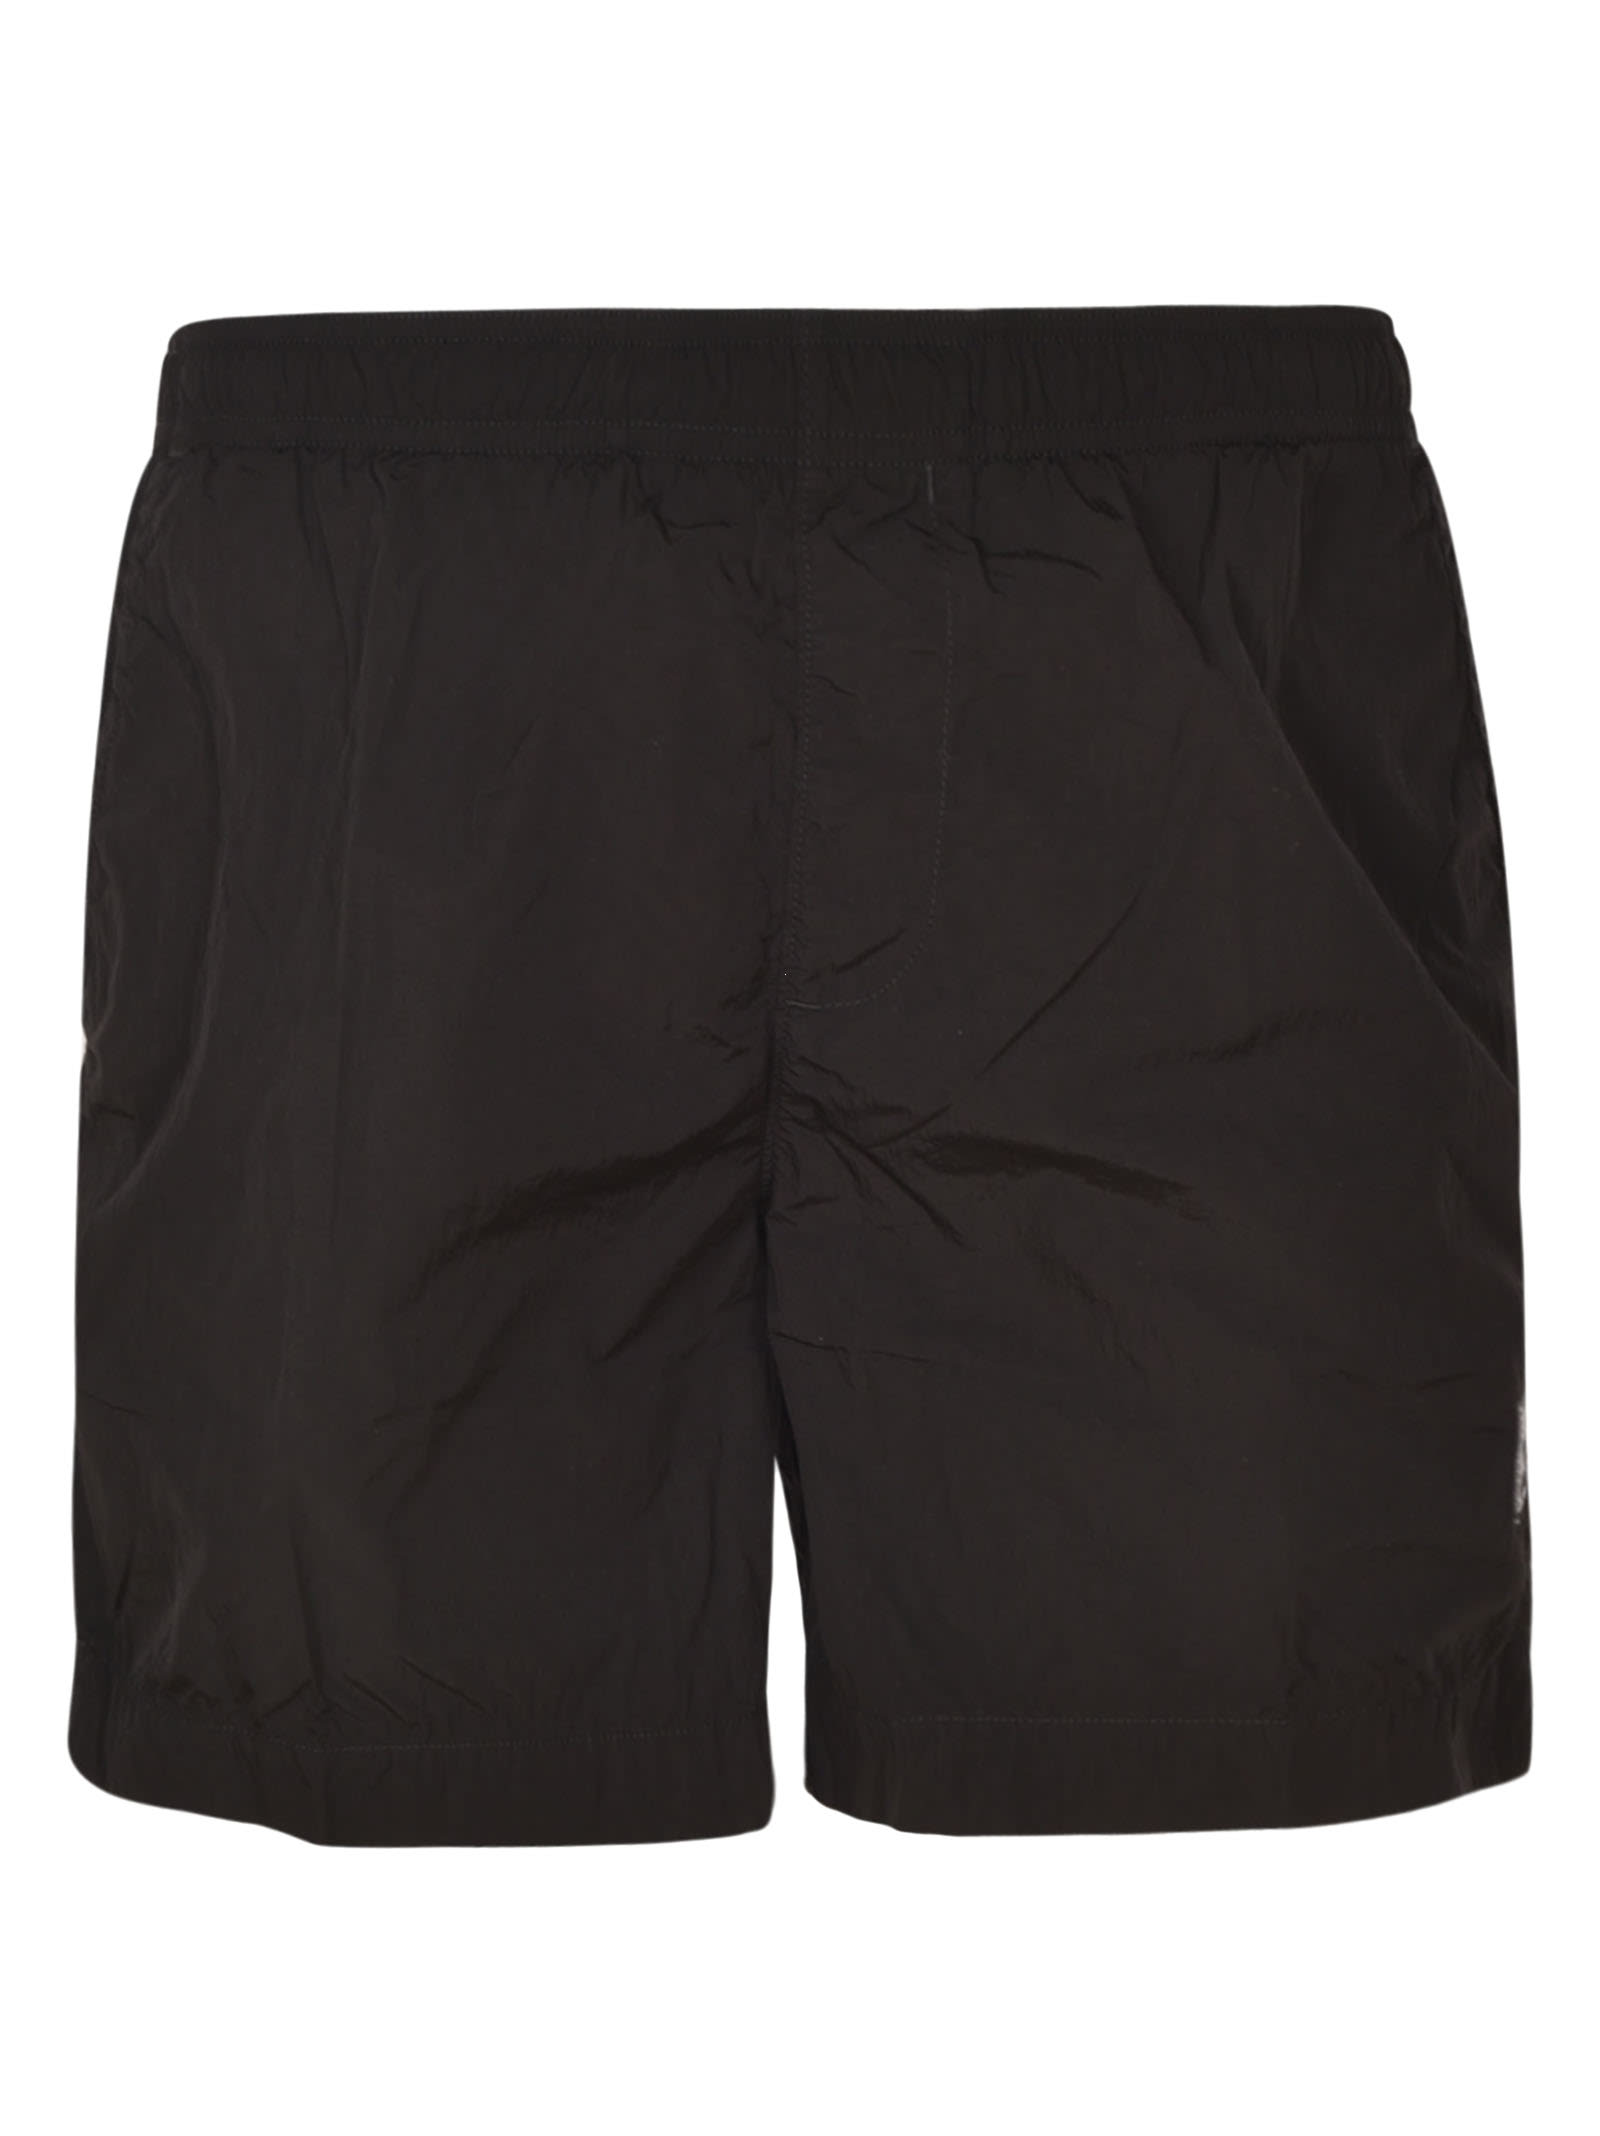 C.P. Company Ribbed Waist Shorts